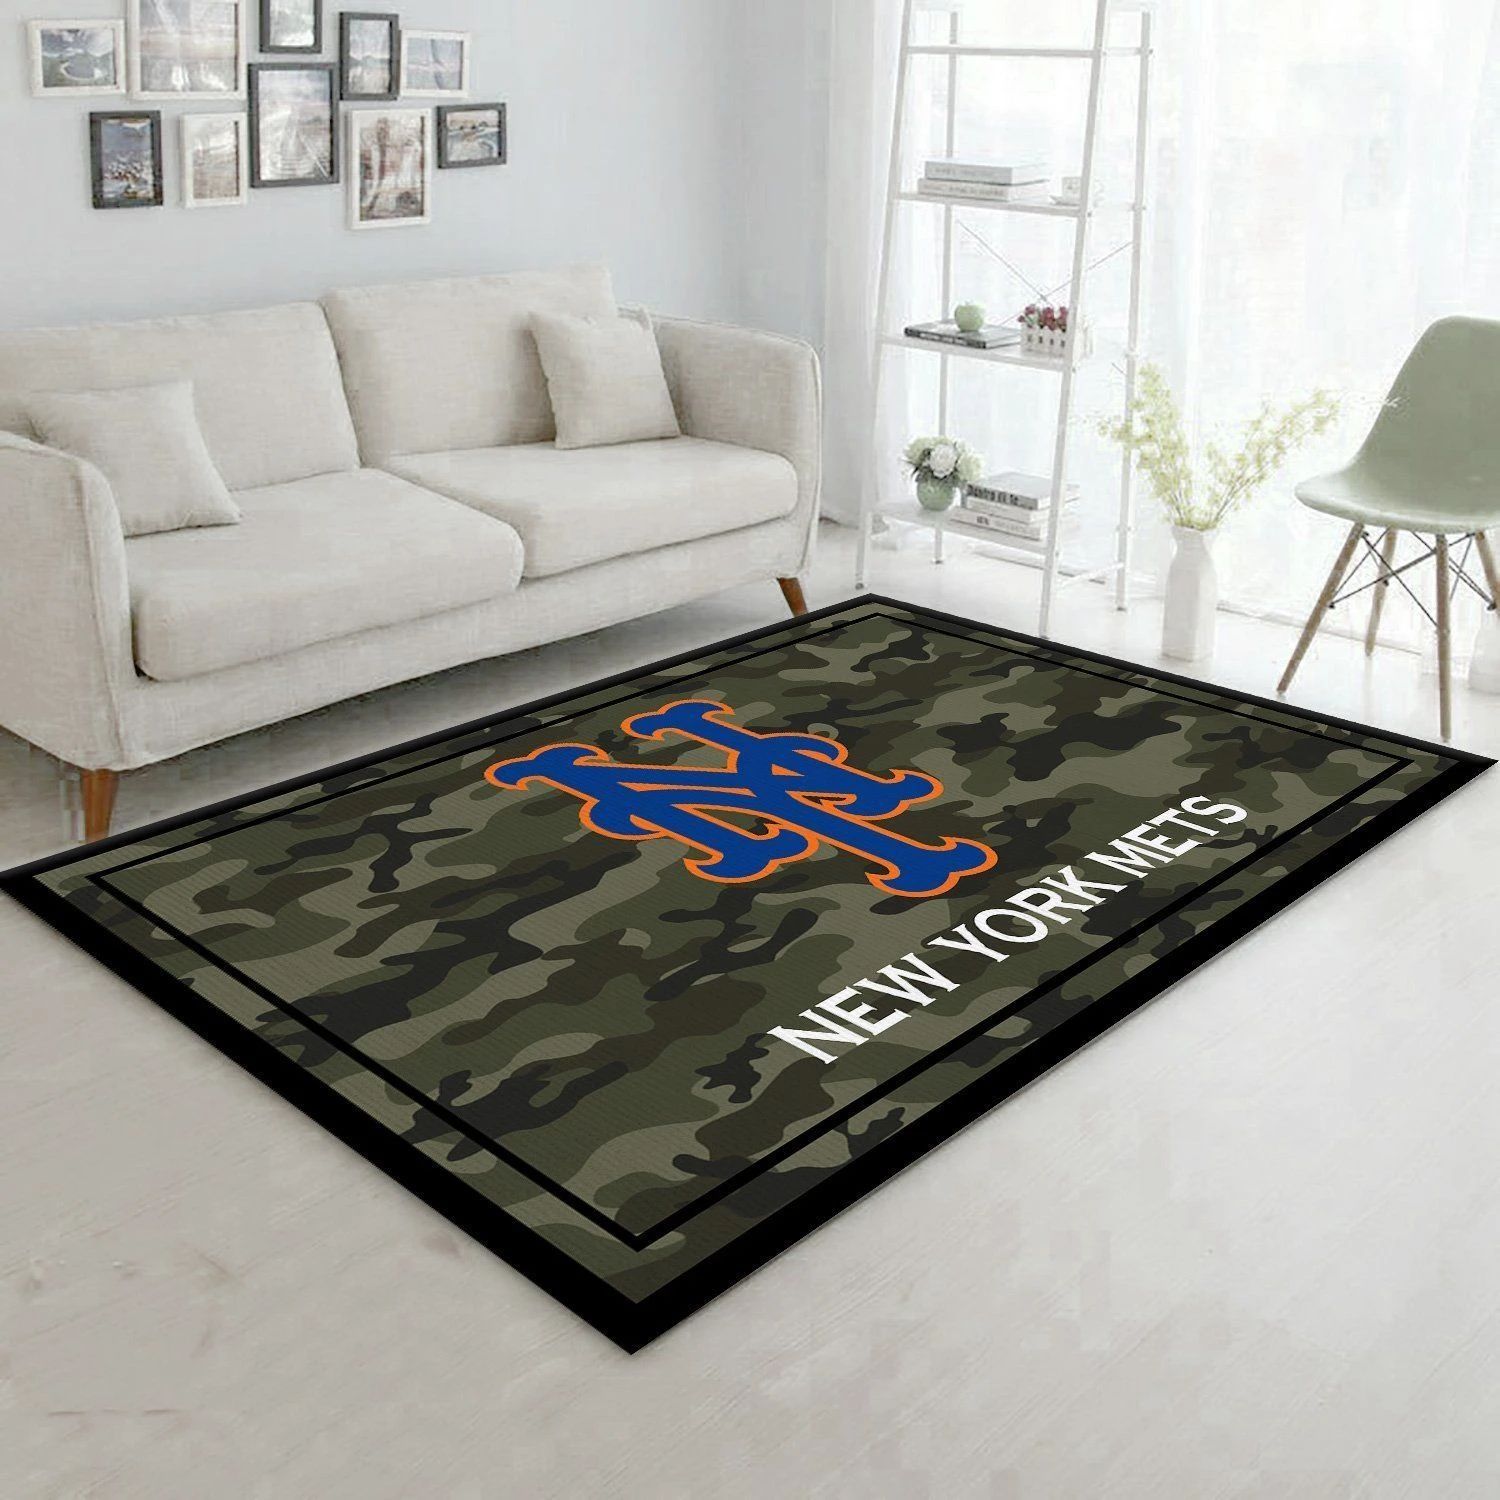 New York Mets MLB Baseball Area Rug MLB251089 Baseball Floor Decor The US Decor - Indoor Outdoor Rugs